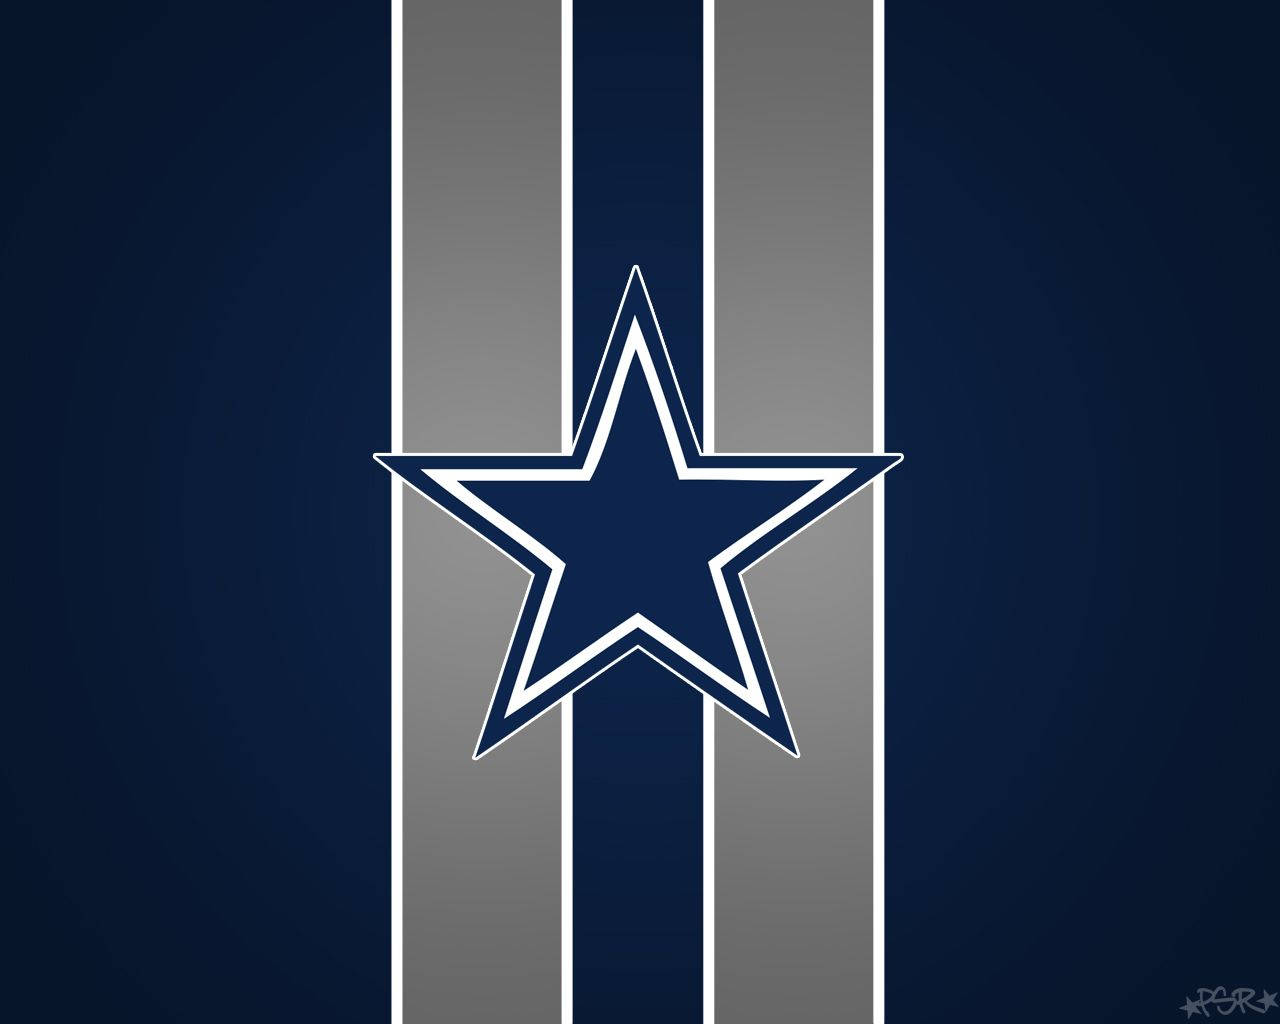 Logotipodos Dallas Cowboys Em Clipart Para Papel De Parede De Computador Ou Celular. Papel de Parede